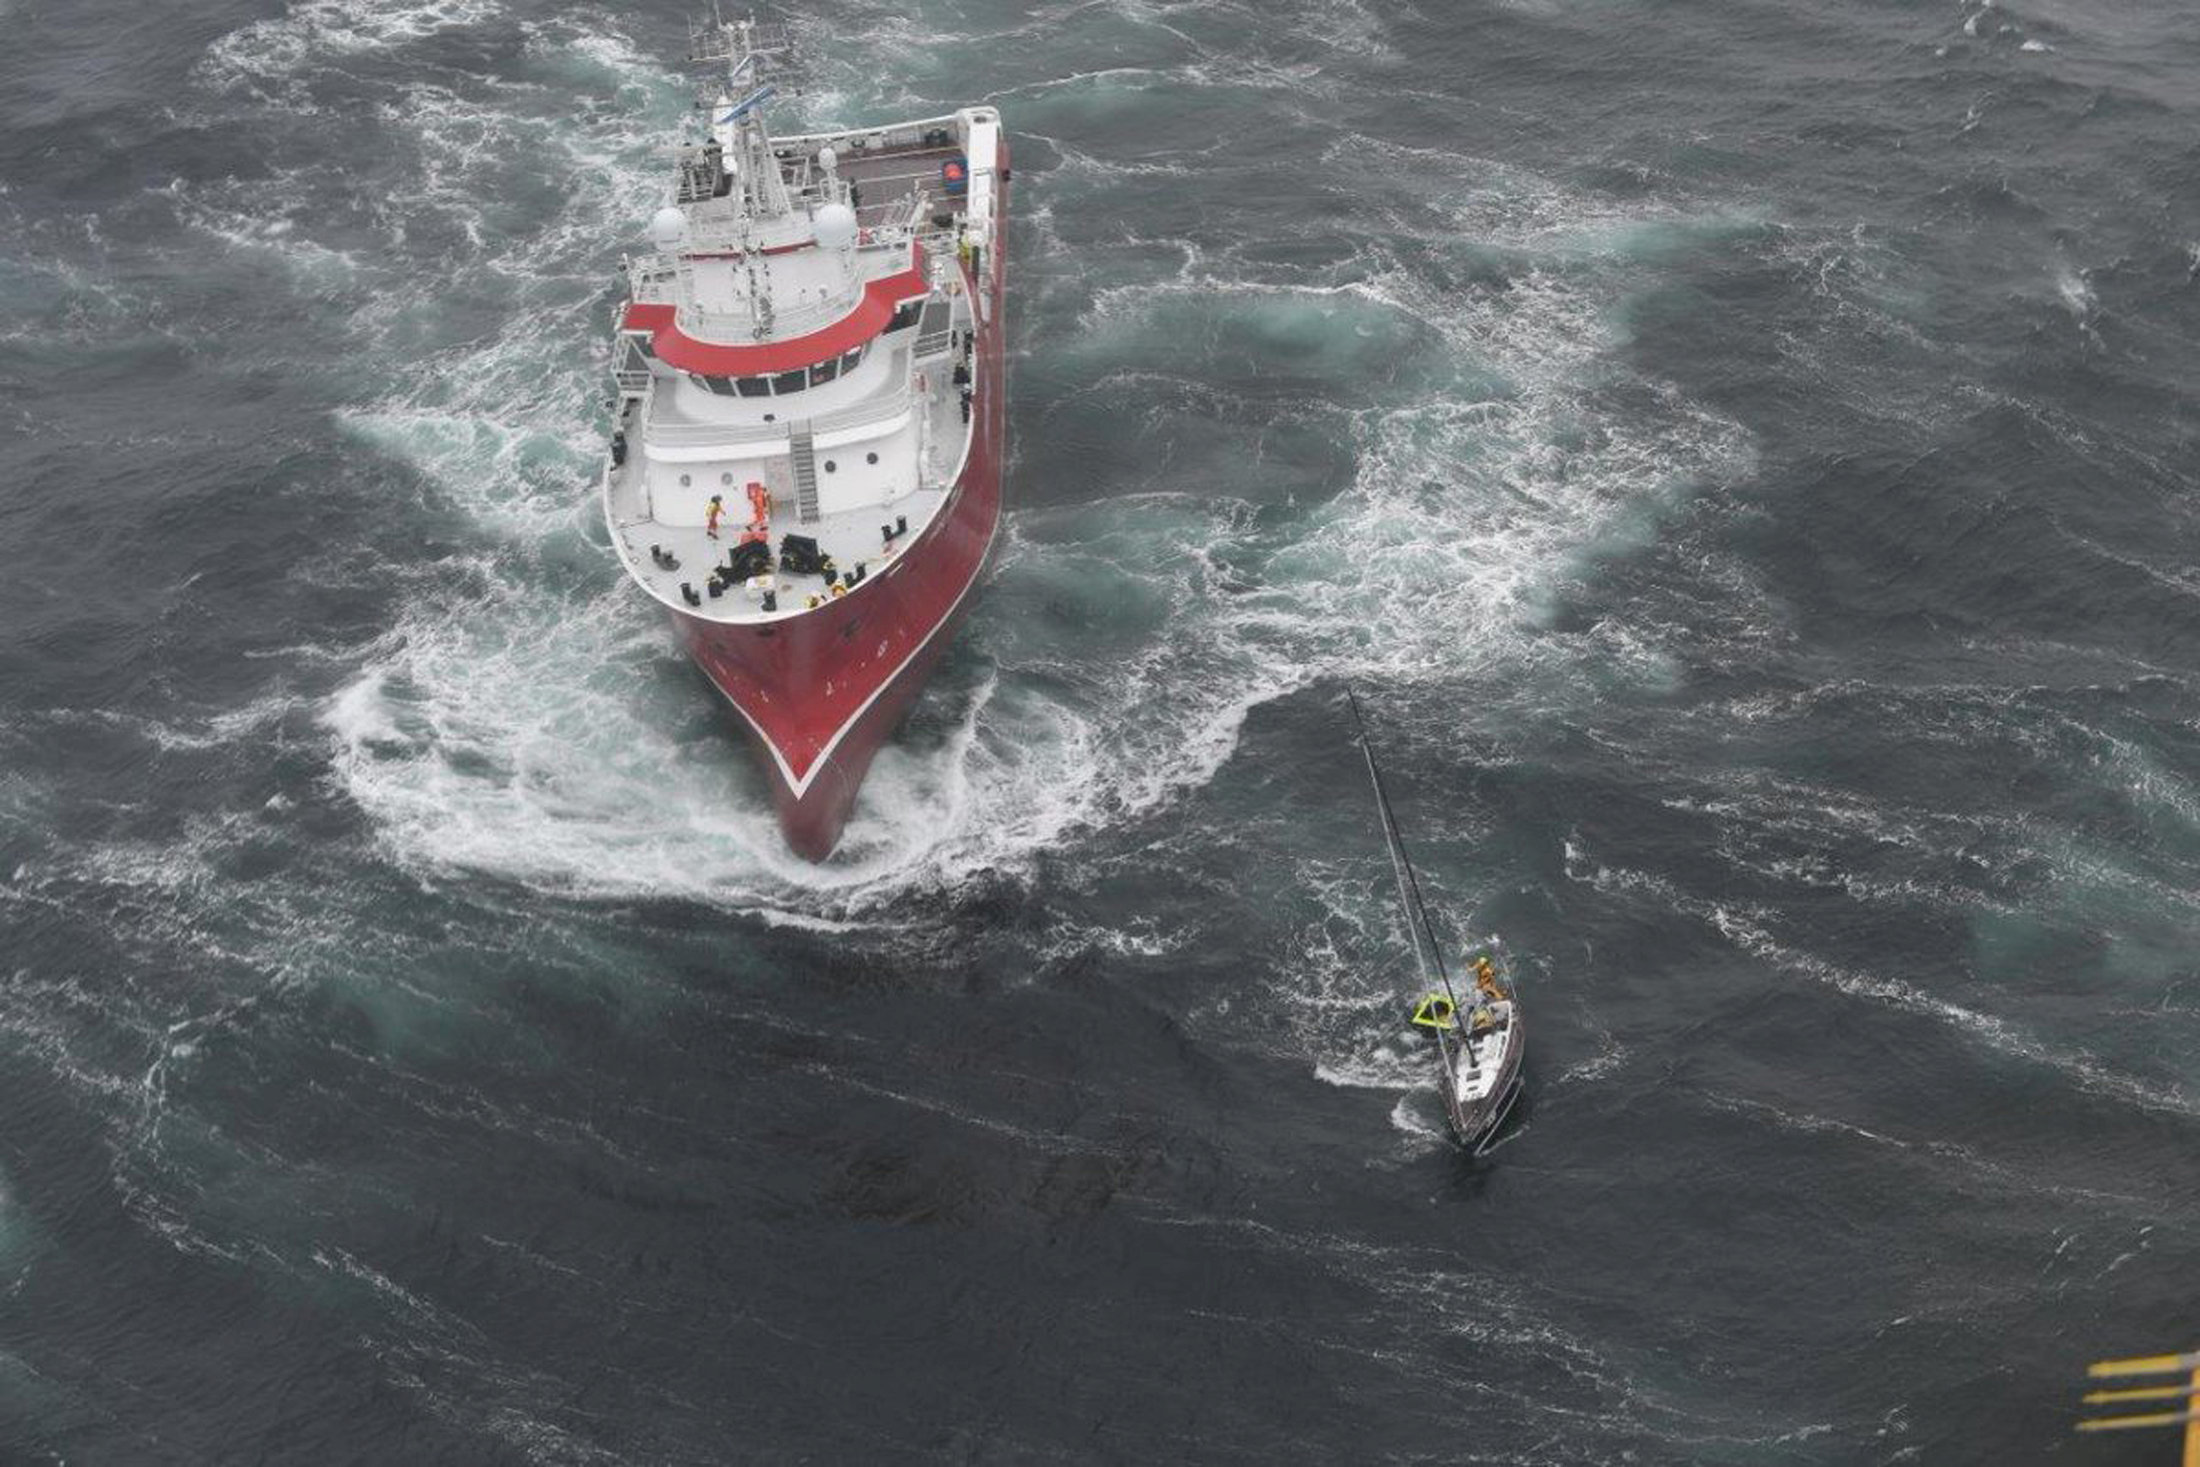 كندا تحاول إنقاذ سفينه شراعية تقطعت بها السبل فى المحيط الأطلسى